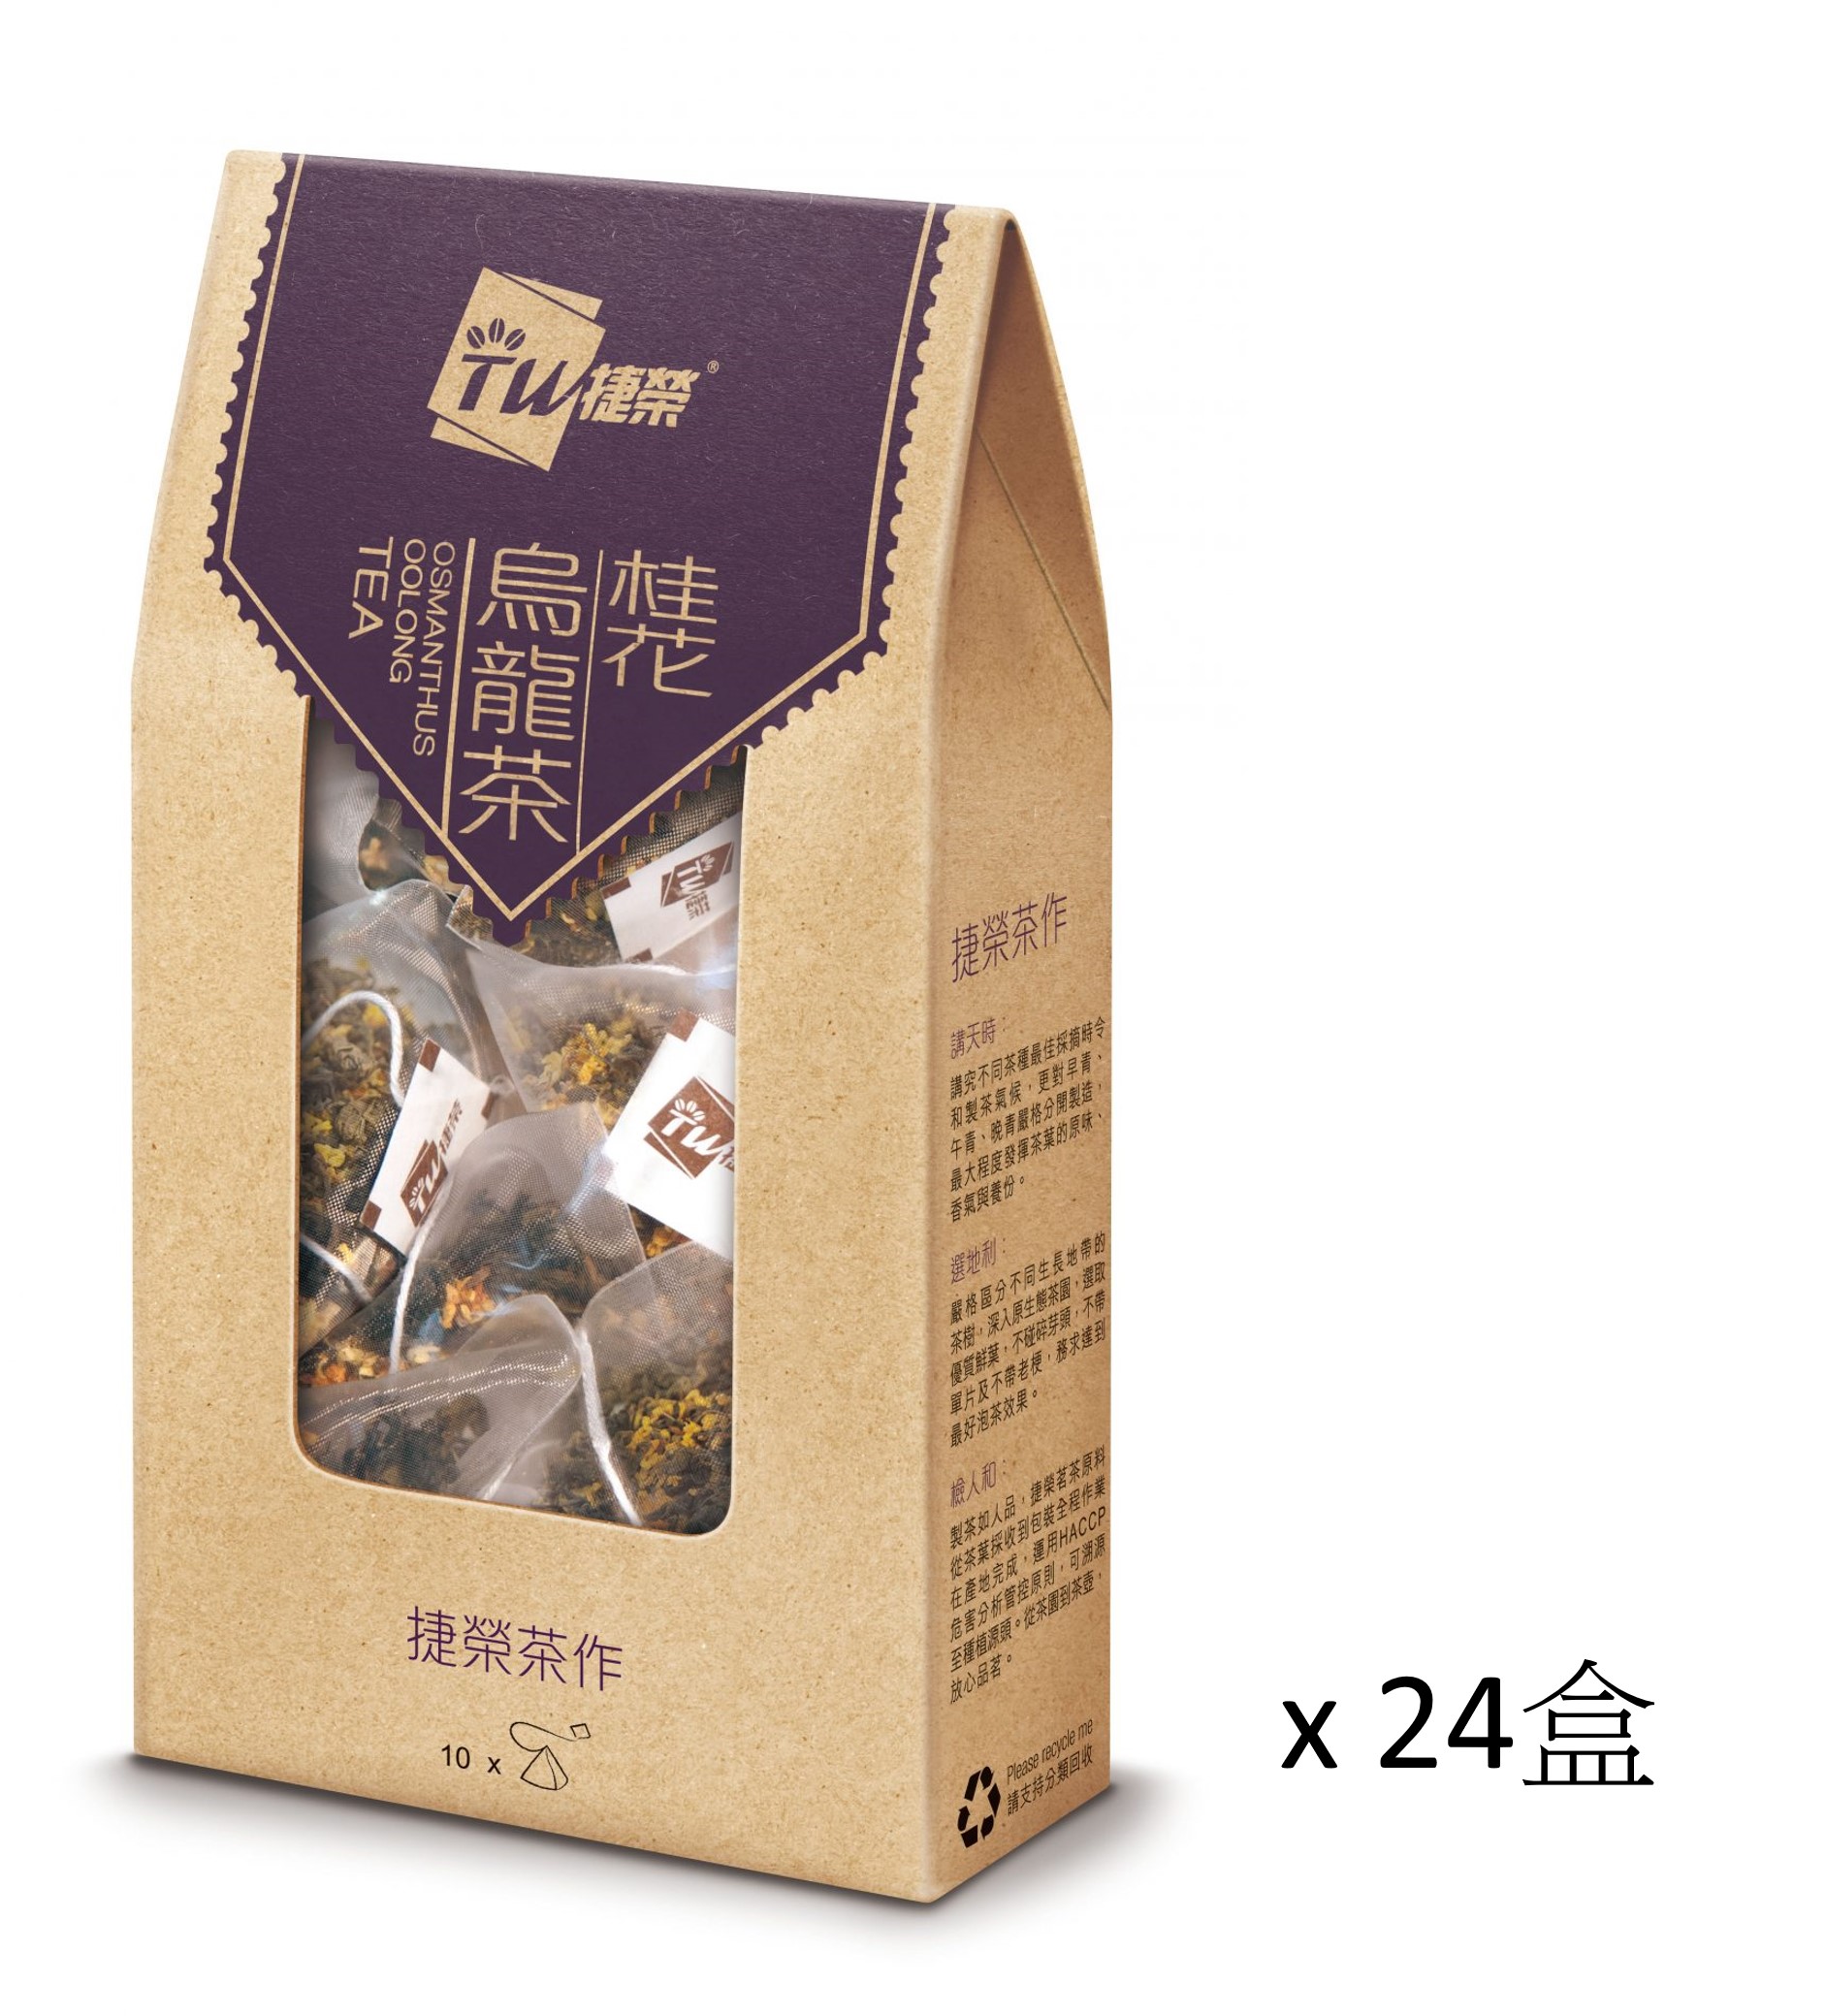 捷榮桂花烏龍茶原葉茶包 2.5克 x 10包 x (24盒)